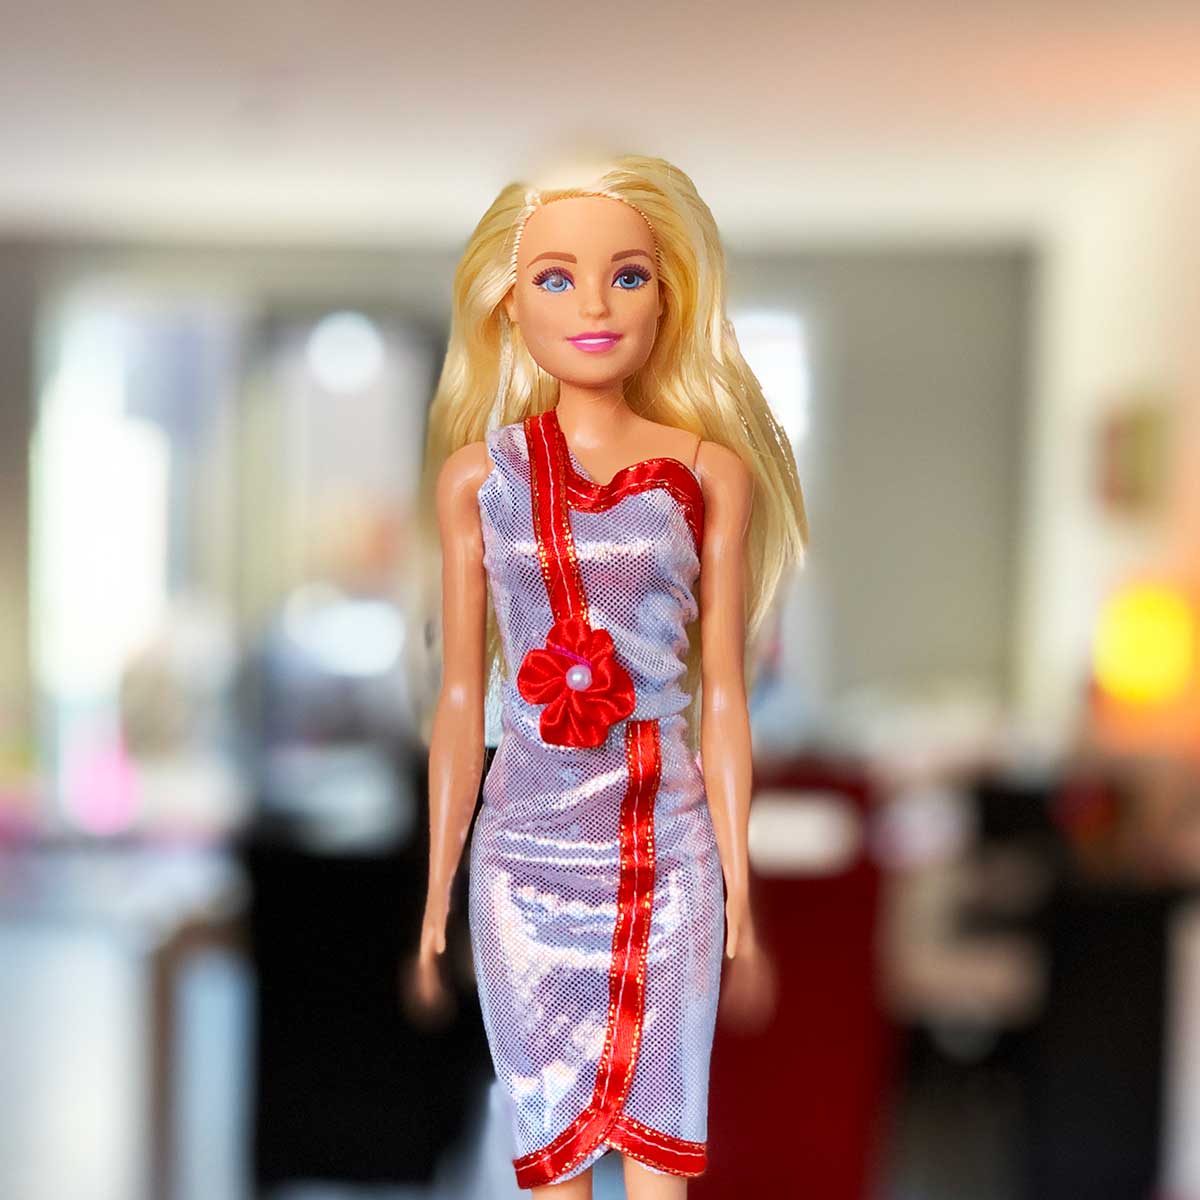 Barbie jurk zilver off shoulder met rode rand en bloem